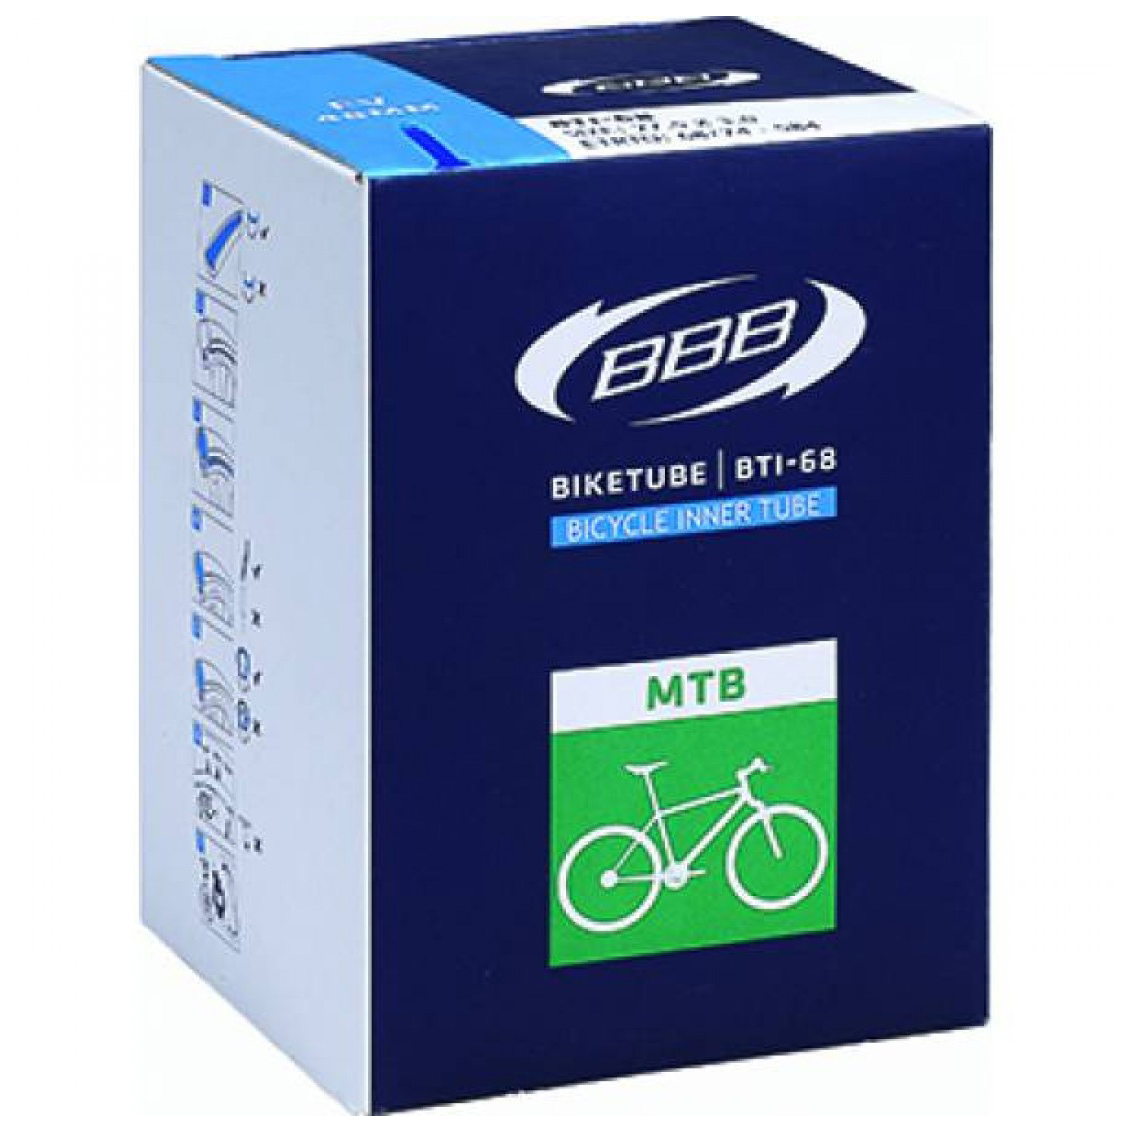  Камера для велосипеда BBB BTI-68 BikeTube 27.5*2,8/3,0 FV 48mm